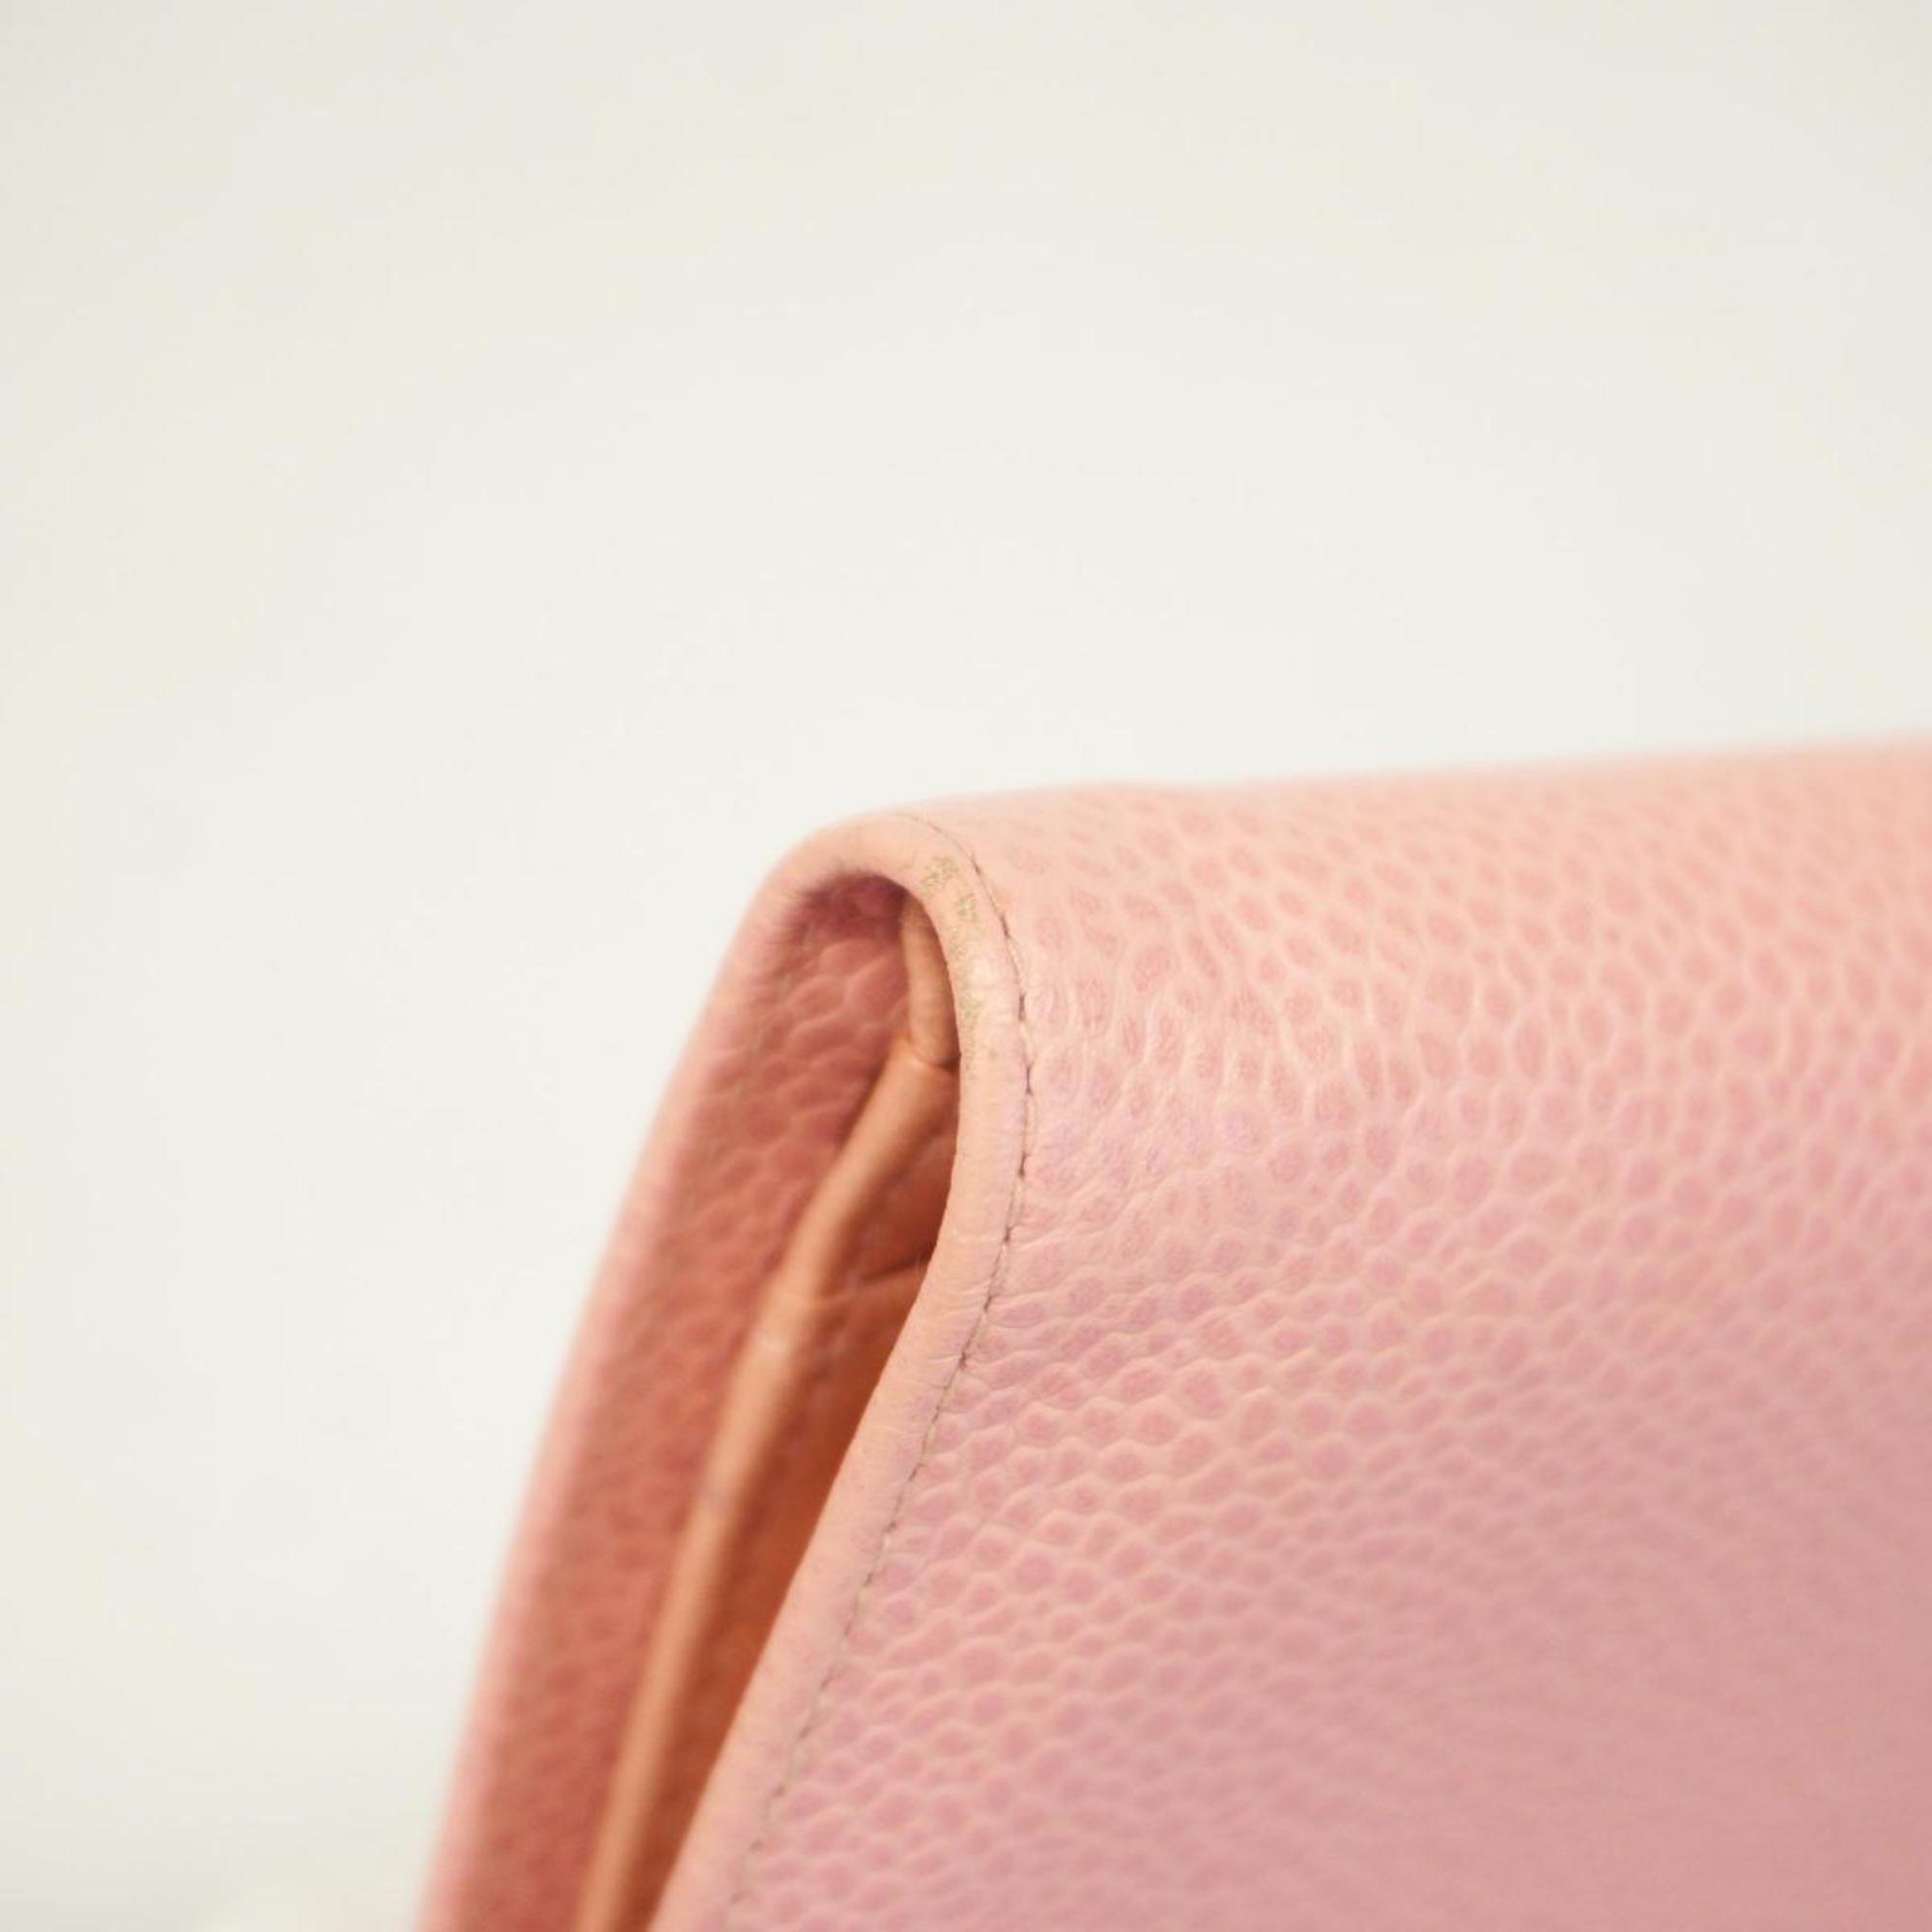 シャネル(Chanel) シャネル 財布 キャビアスキン ピンク   レディース